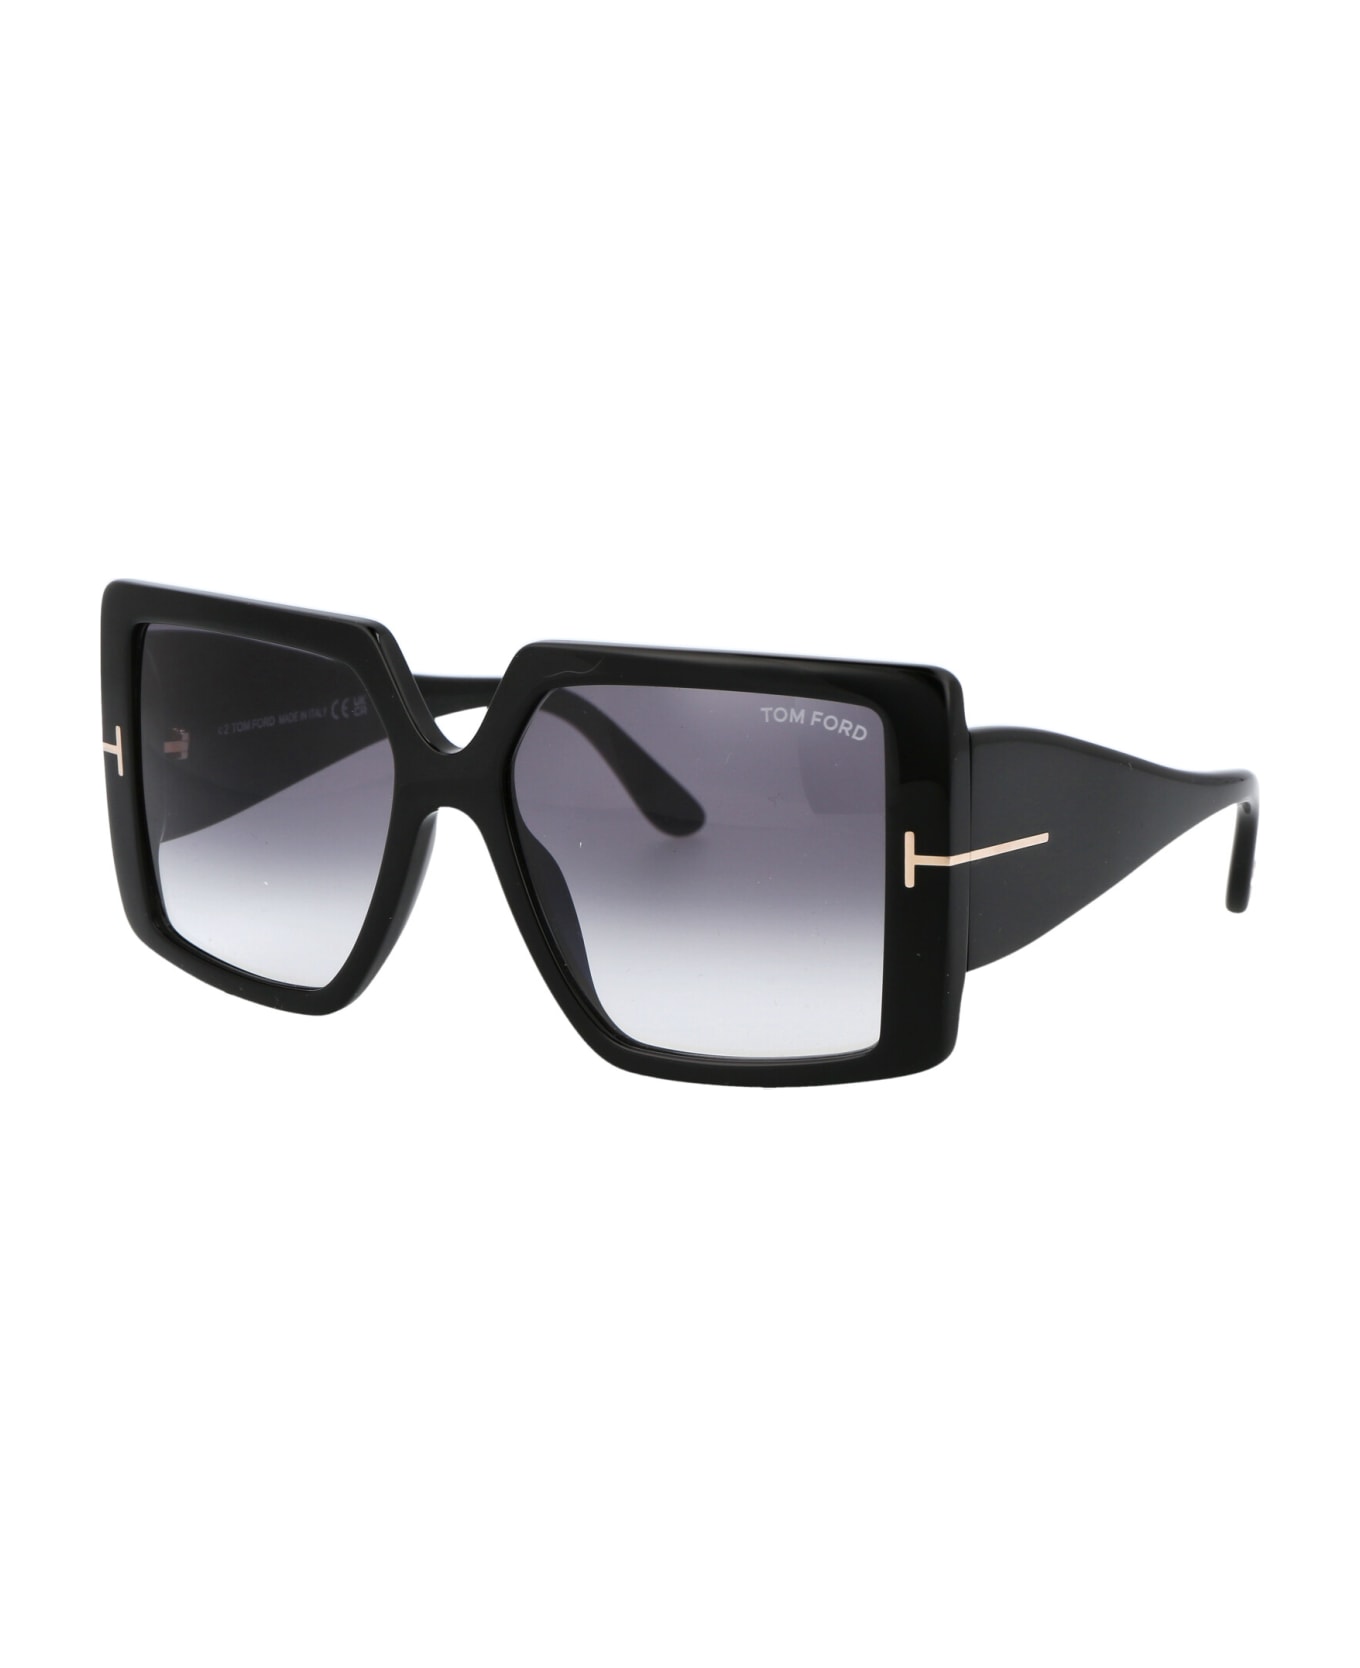 Tom Ford Eyewear Quinn Sunglasses - 01B Nero Lucido / Fumo Grad